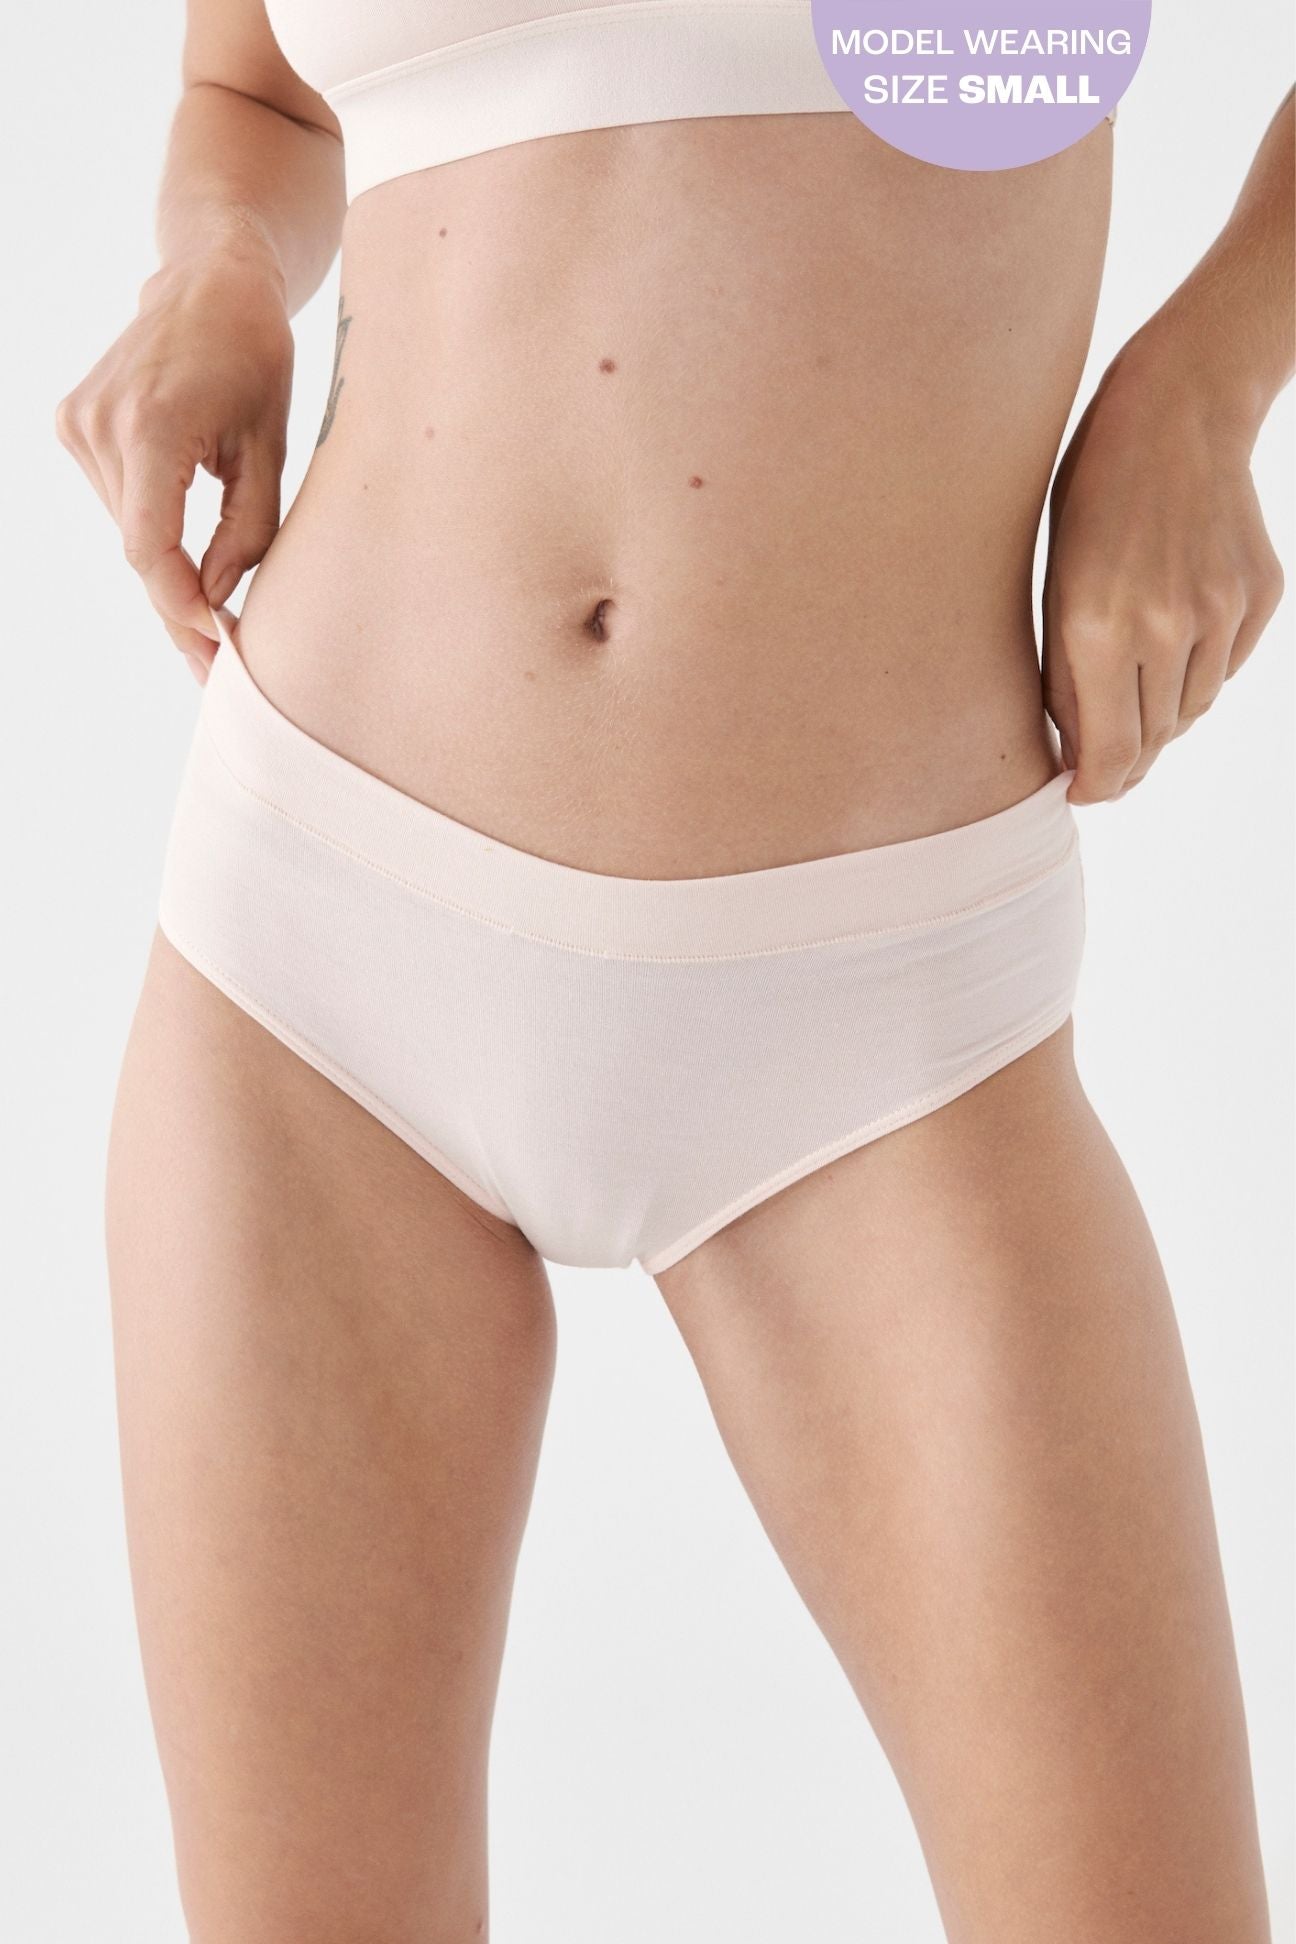 The Brief - Blush, Undies - First Thing Underwear